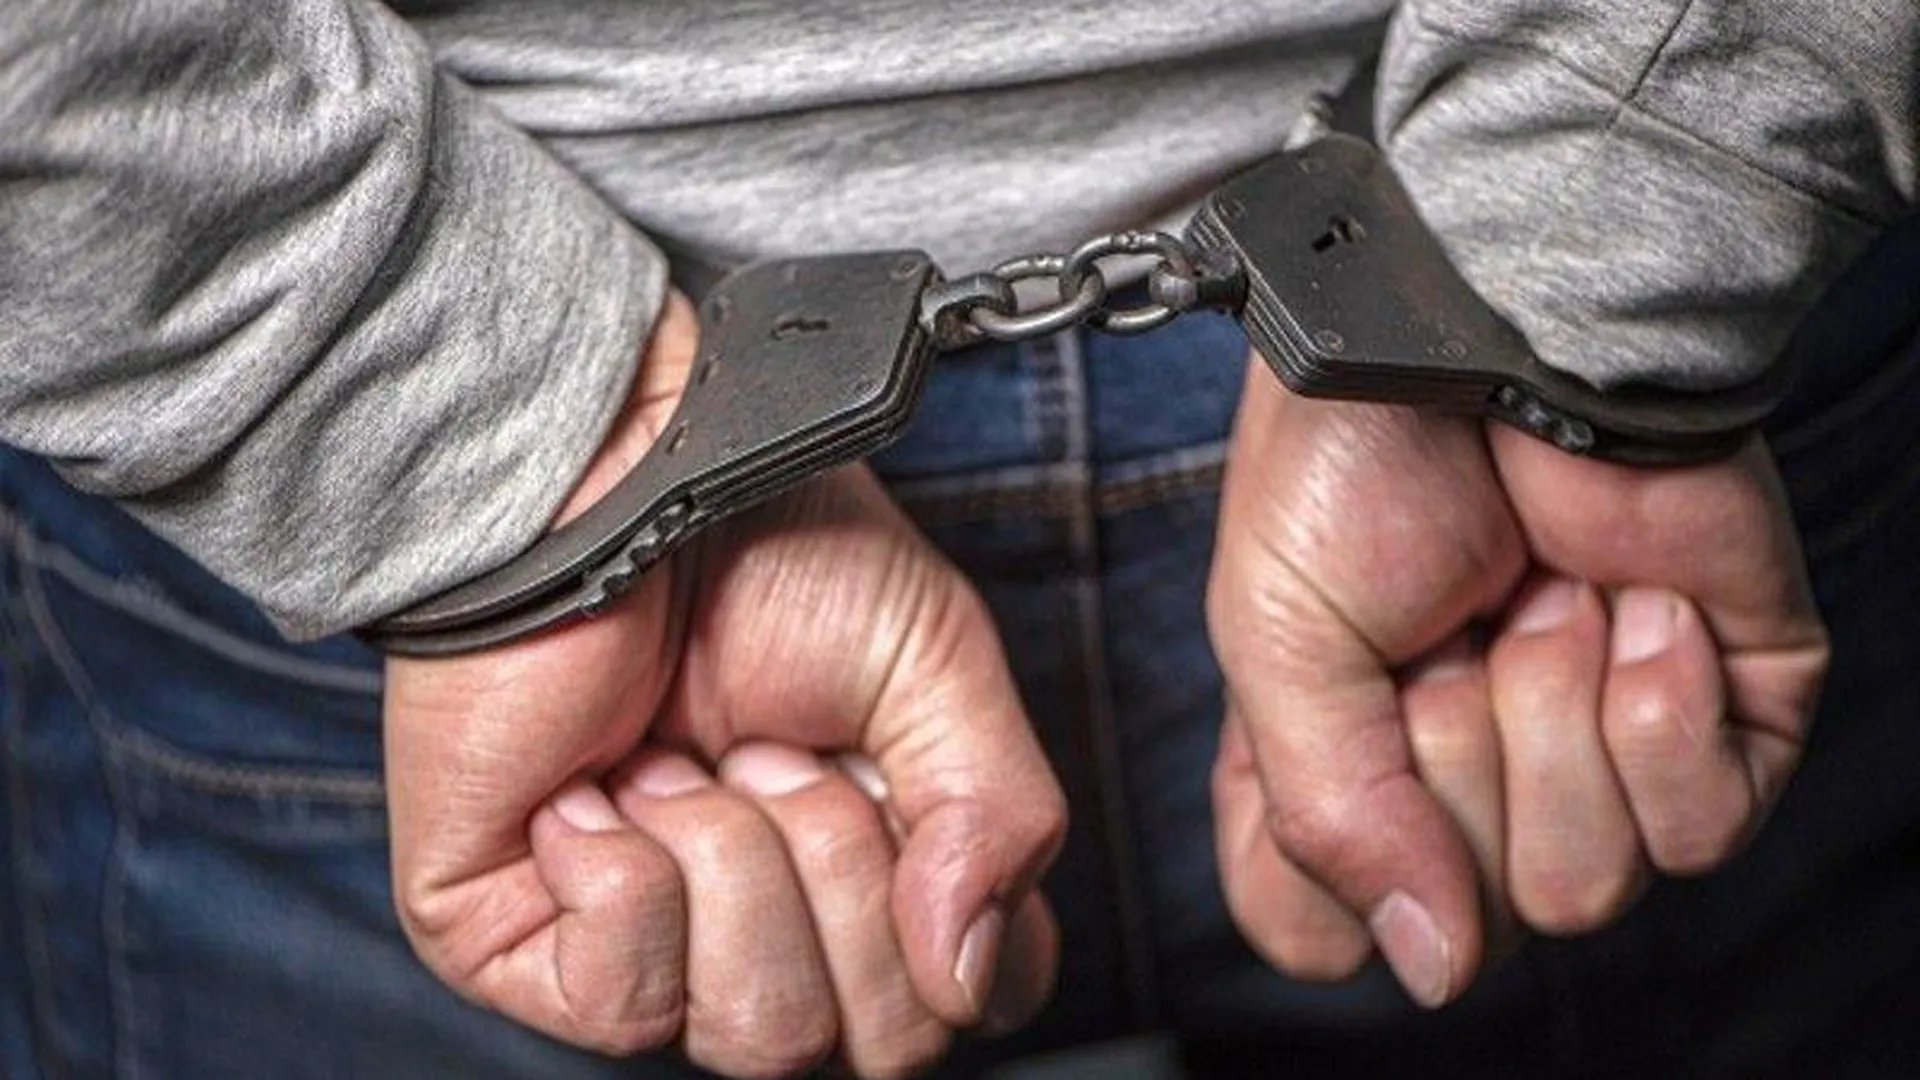 Мужчину, подозреваемого в мошенничестве в отношении пенсионеров, задержали в Орехово-Зуево